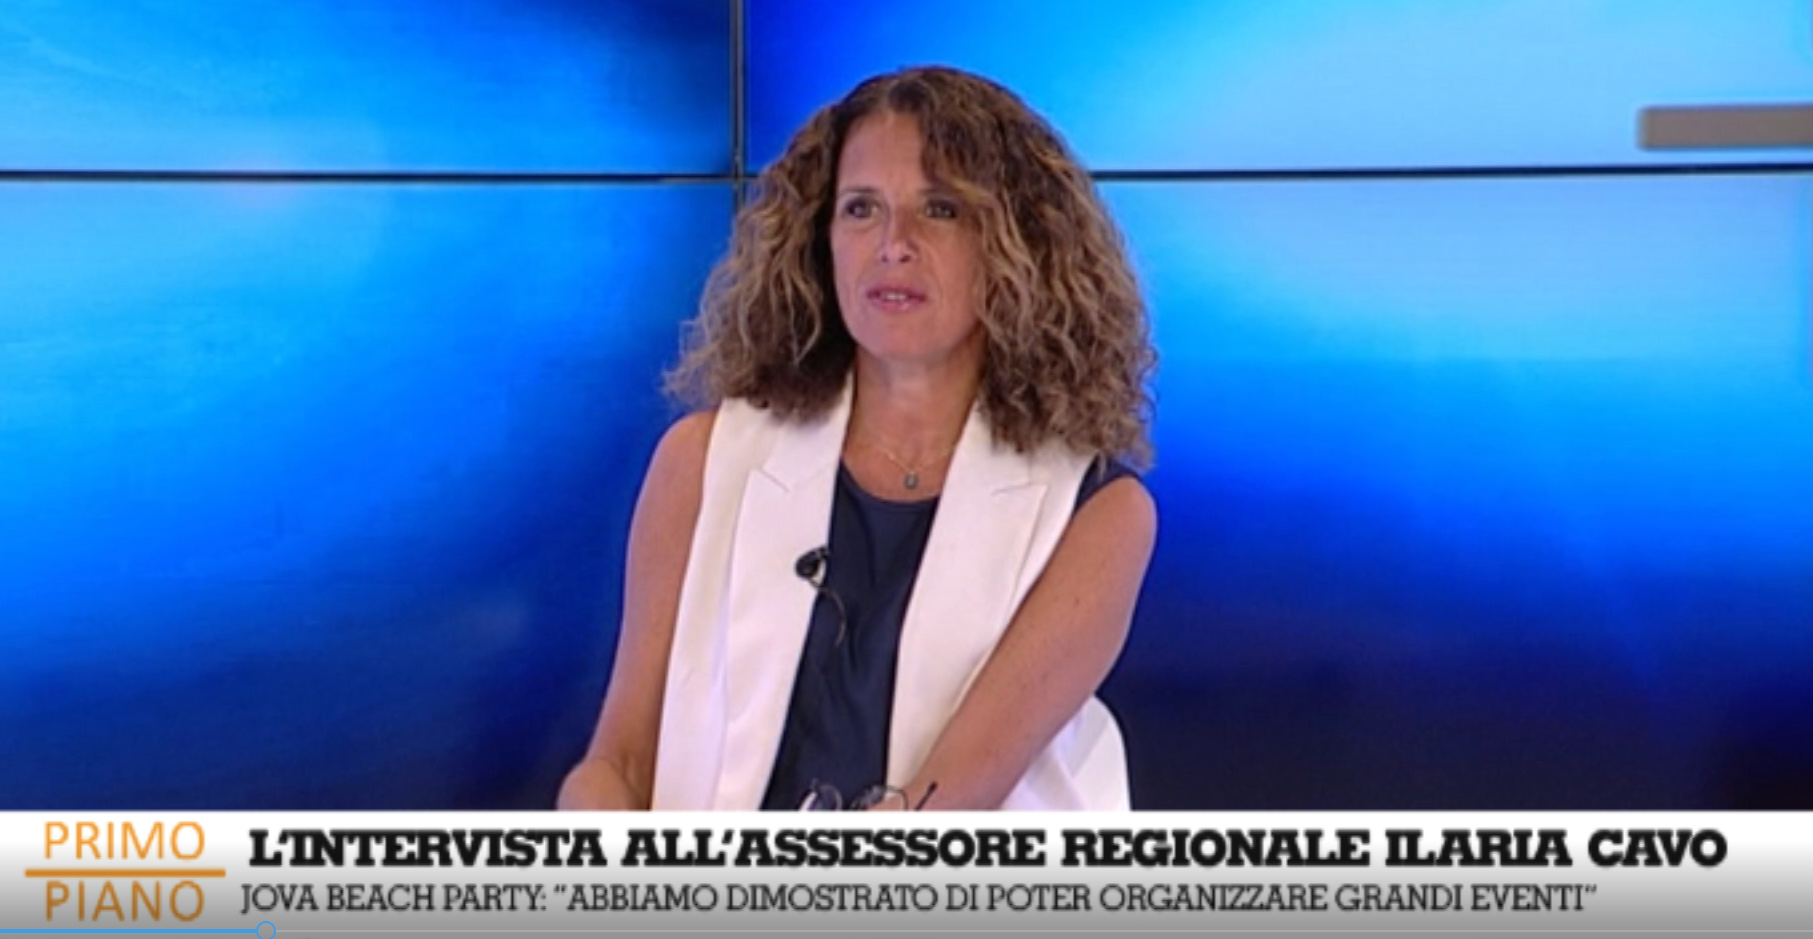 L'assessore regionale Ilaria Cavo ospite a Telenord: dalle sue deleghe alla possibile candidatura a Roma